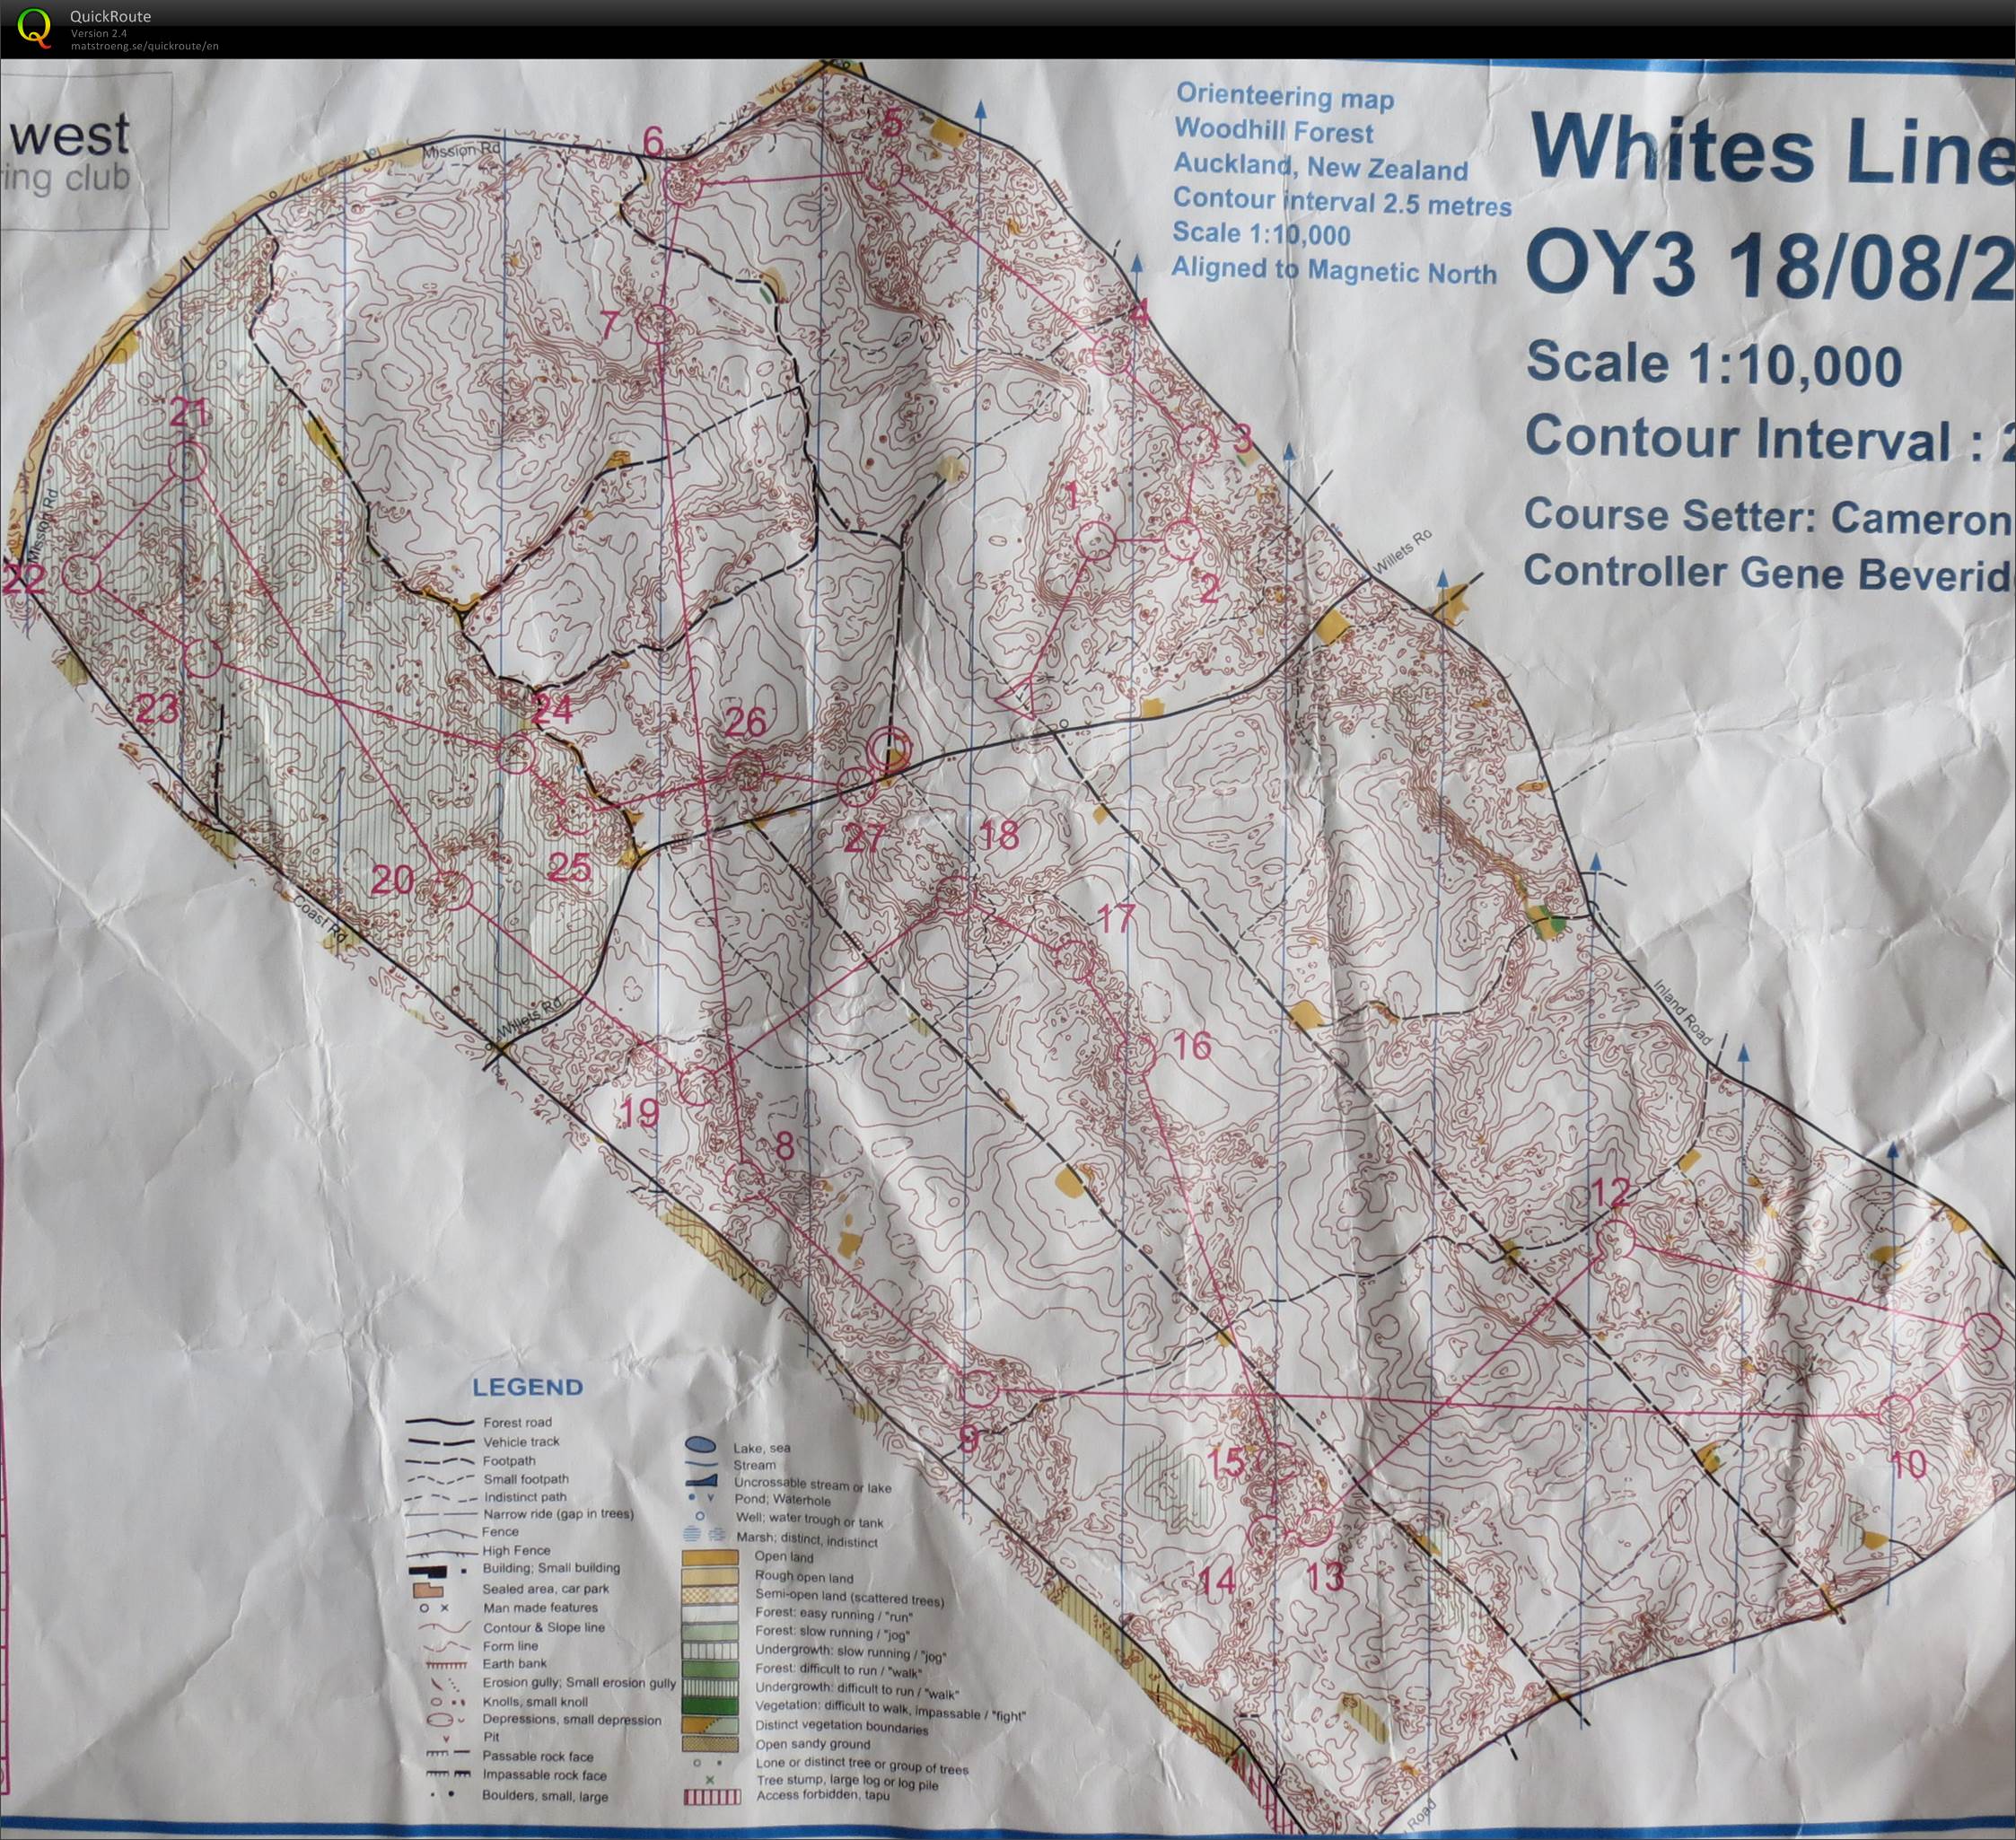 OY3 2013 Whites Line (2013-08-17)